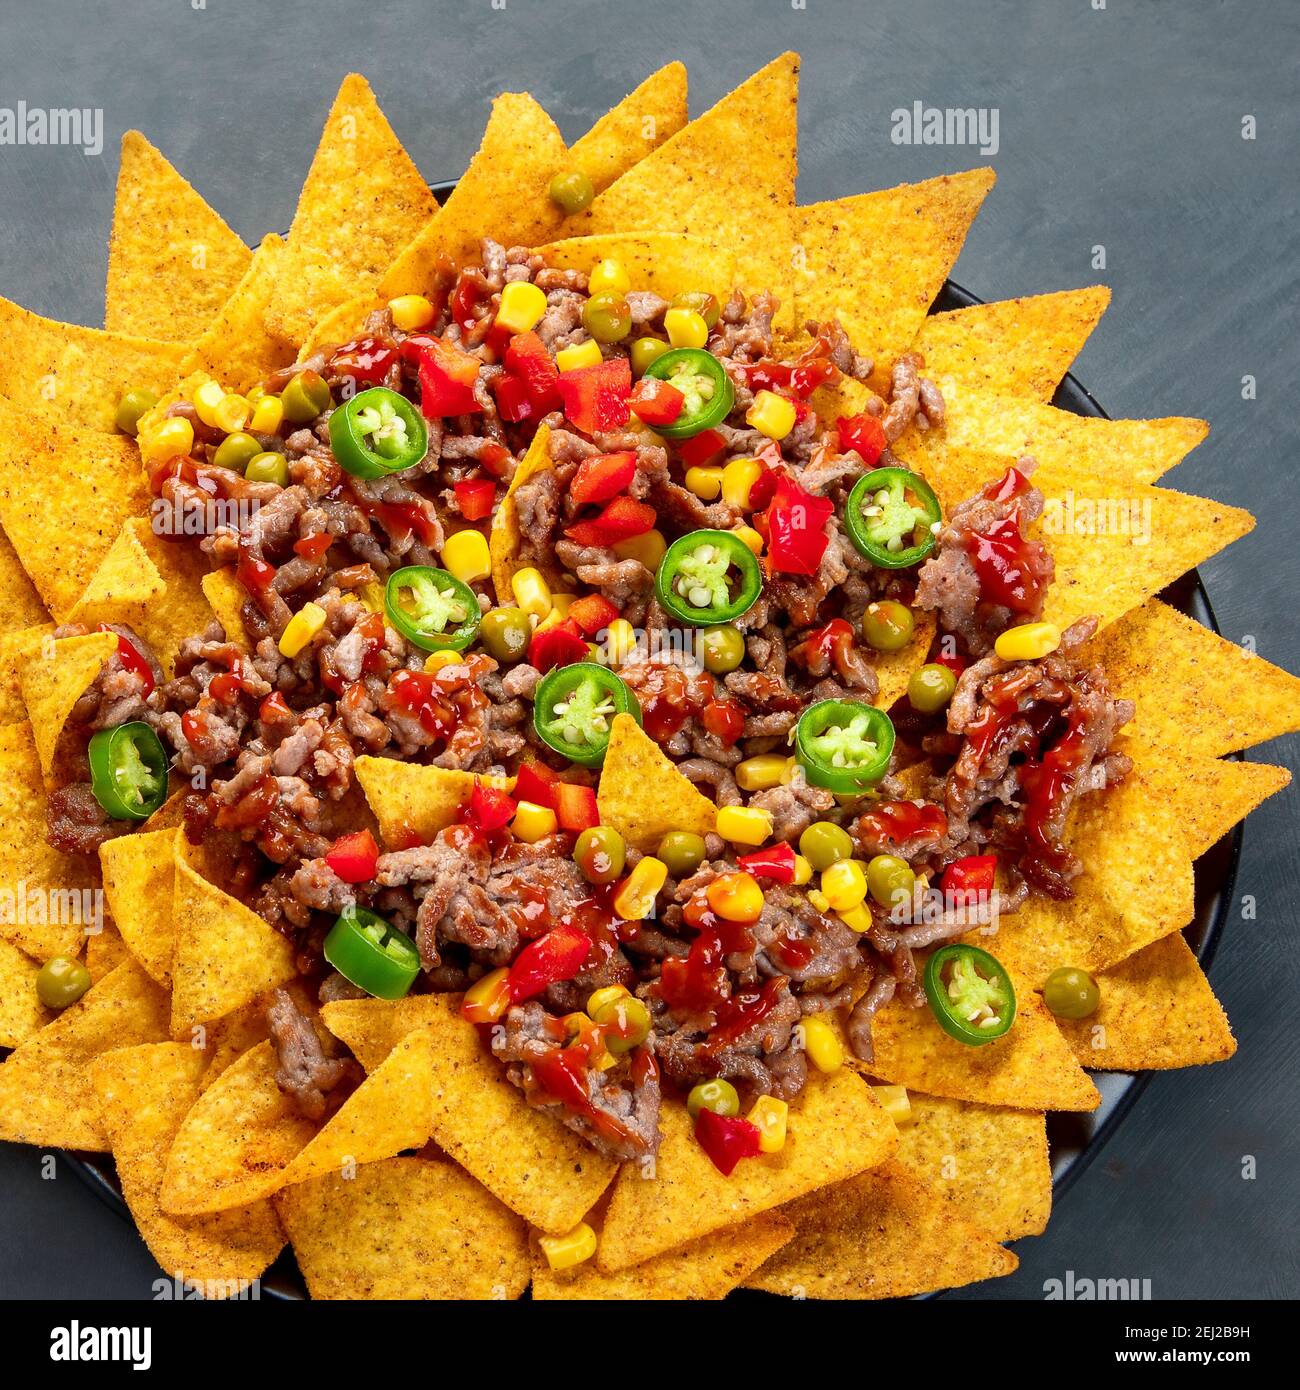 Köstliche hispanisch-mexikanische Speise-Pension mit Nachos, Rindfleisch, Guacamole, Avocado und Starfruit. Scharf und würzig Stockfoto